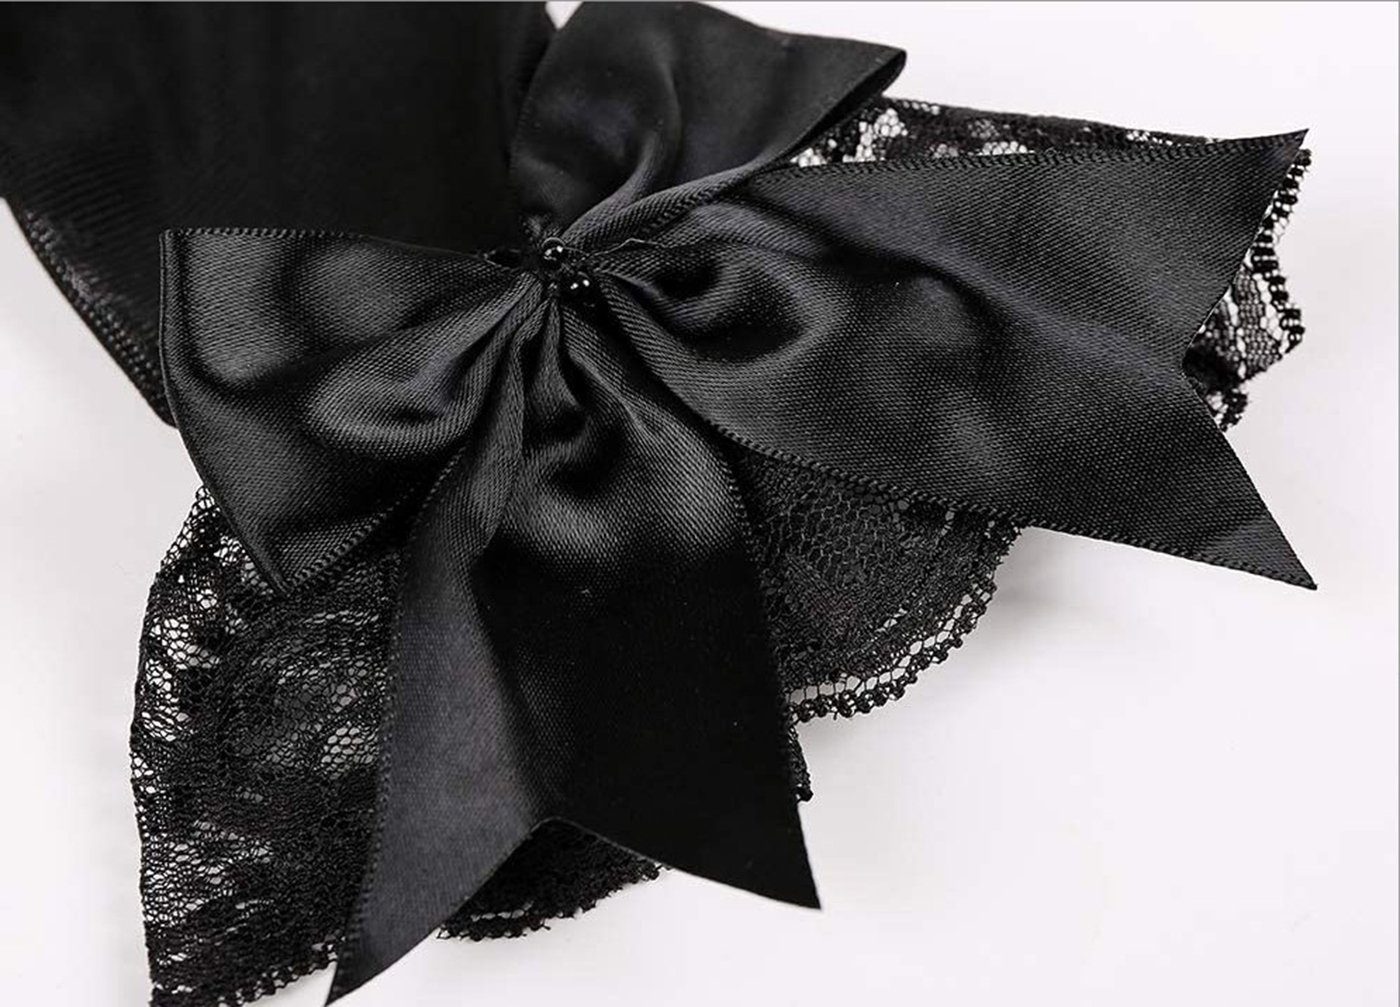 SCHUTA Abendhandschuhe Braut Schwarz Kleiderhandschuhe,Schmetterlingsknotenhandschuhe Brautkleider